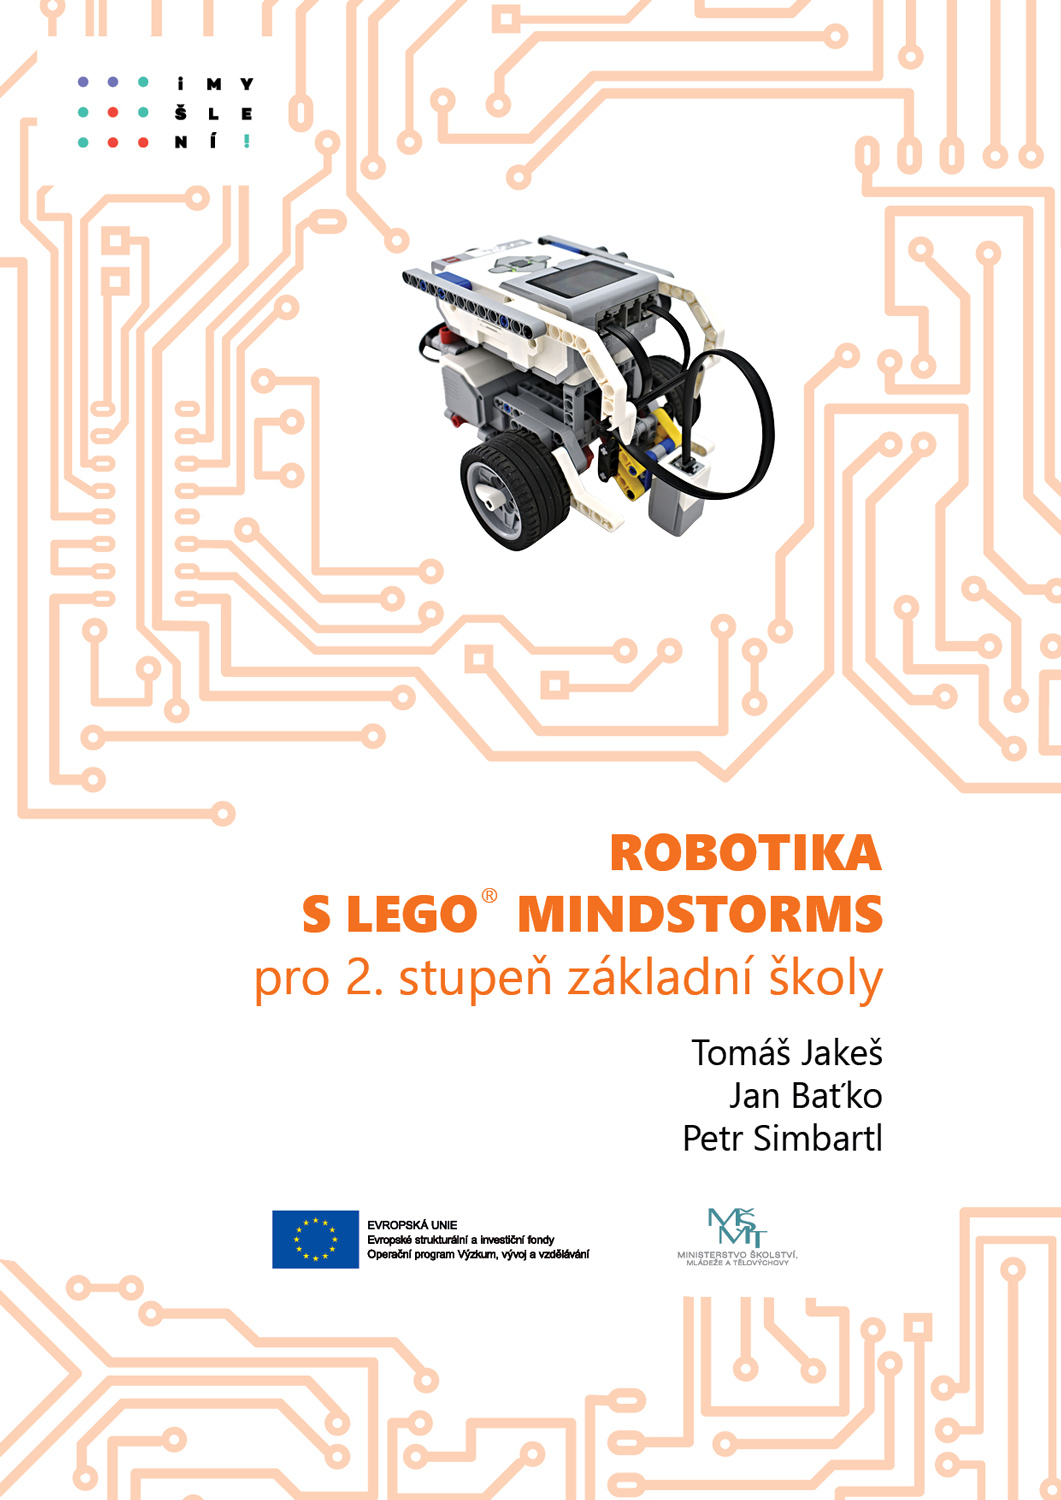 Učebnice LEGO robotiky s EV3